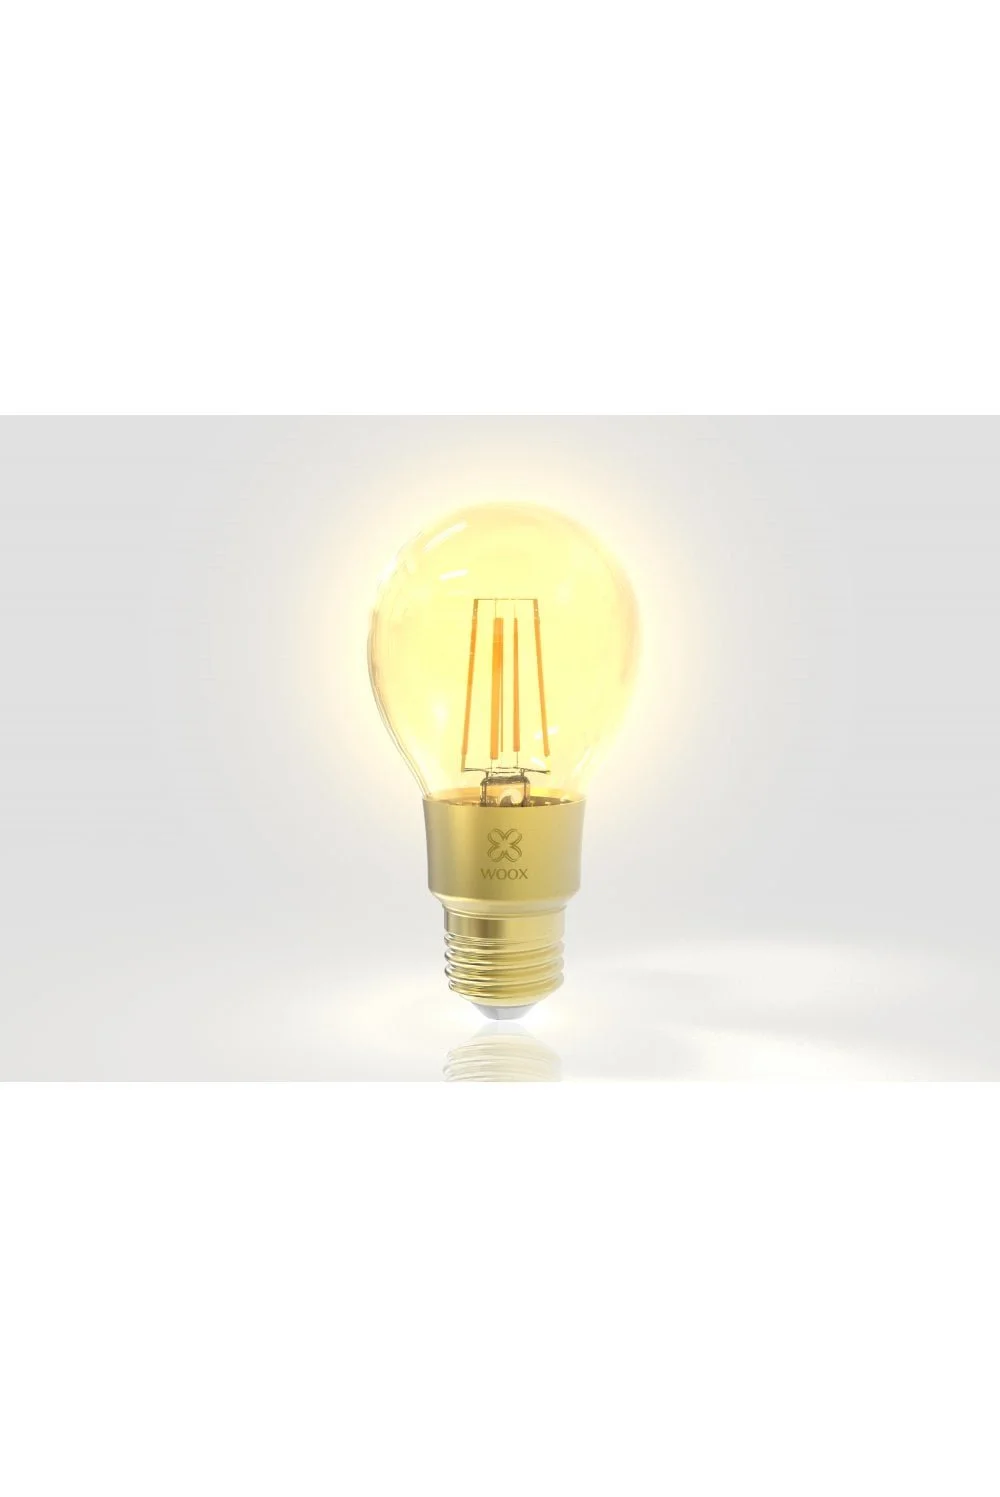 Woox смарт крушка Light - R9078 - WiFi Smart Filament LED Bulb E27, 6W/60W, 650lm - image 2